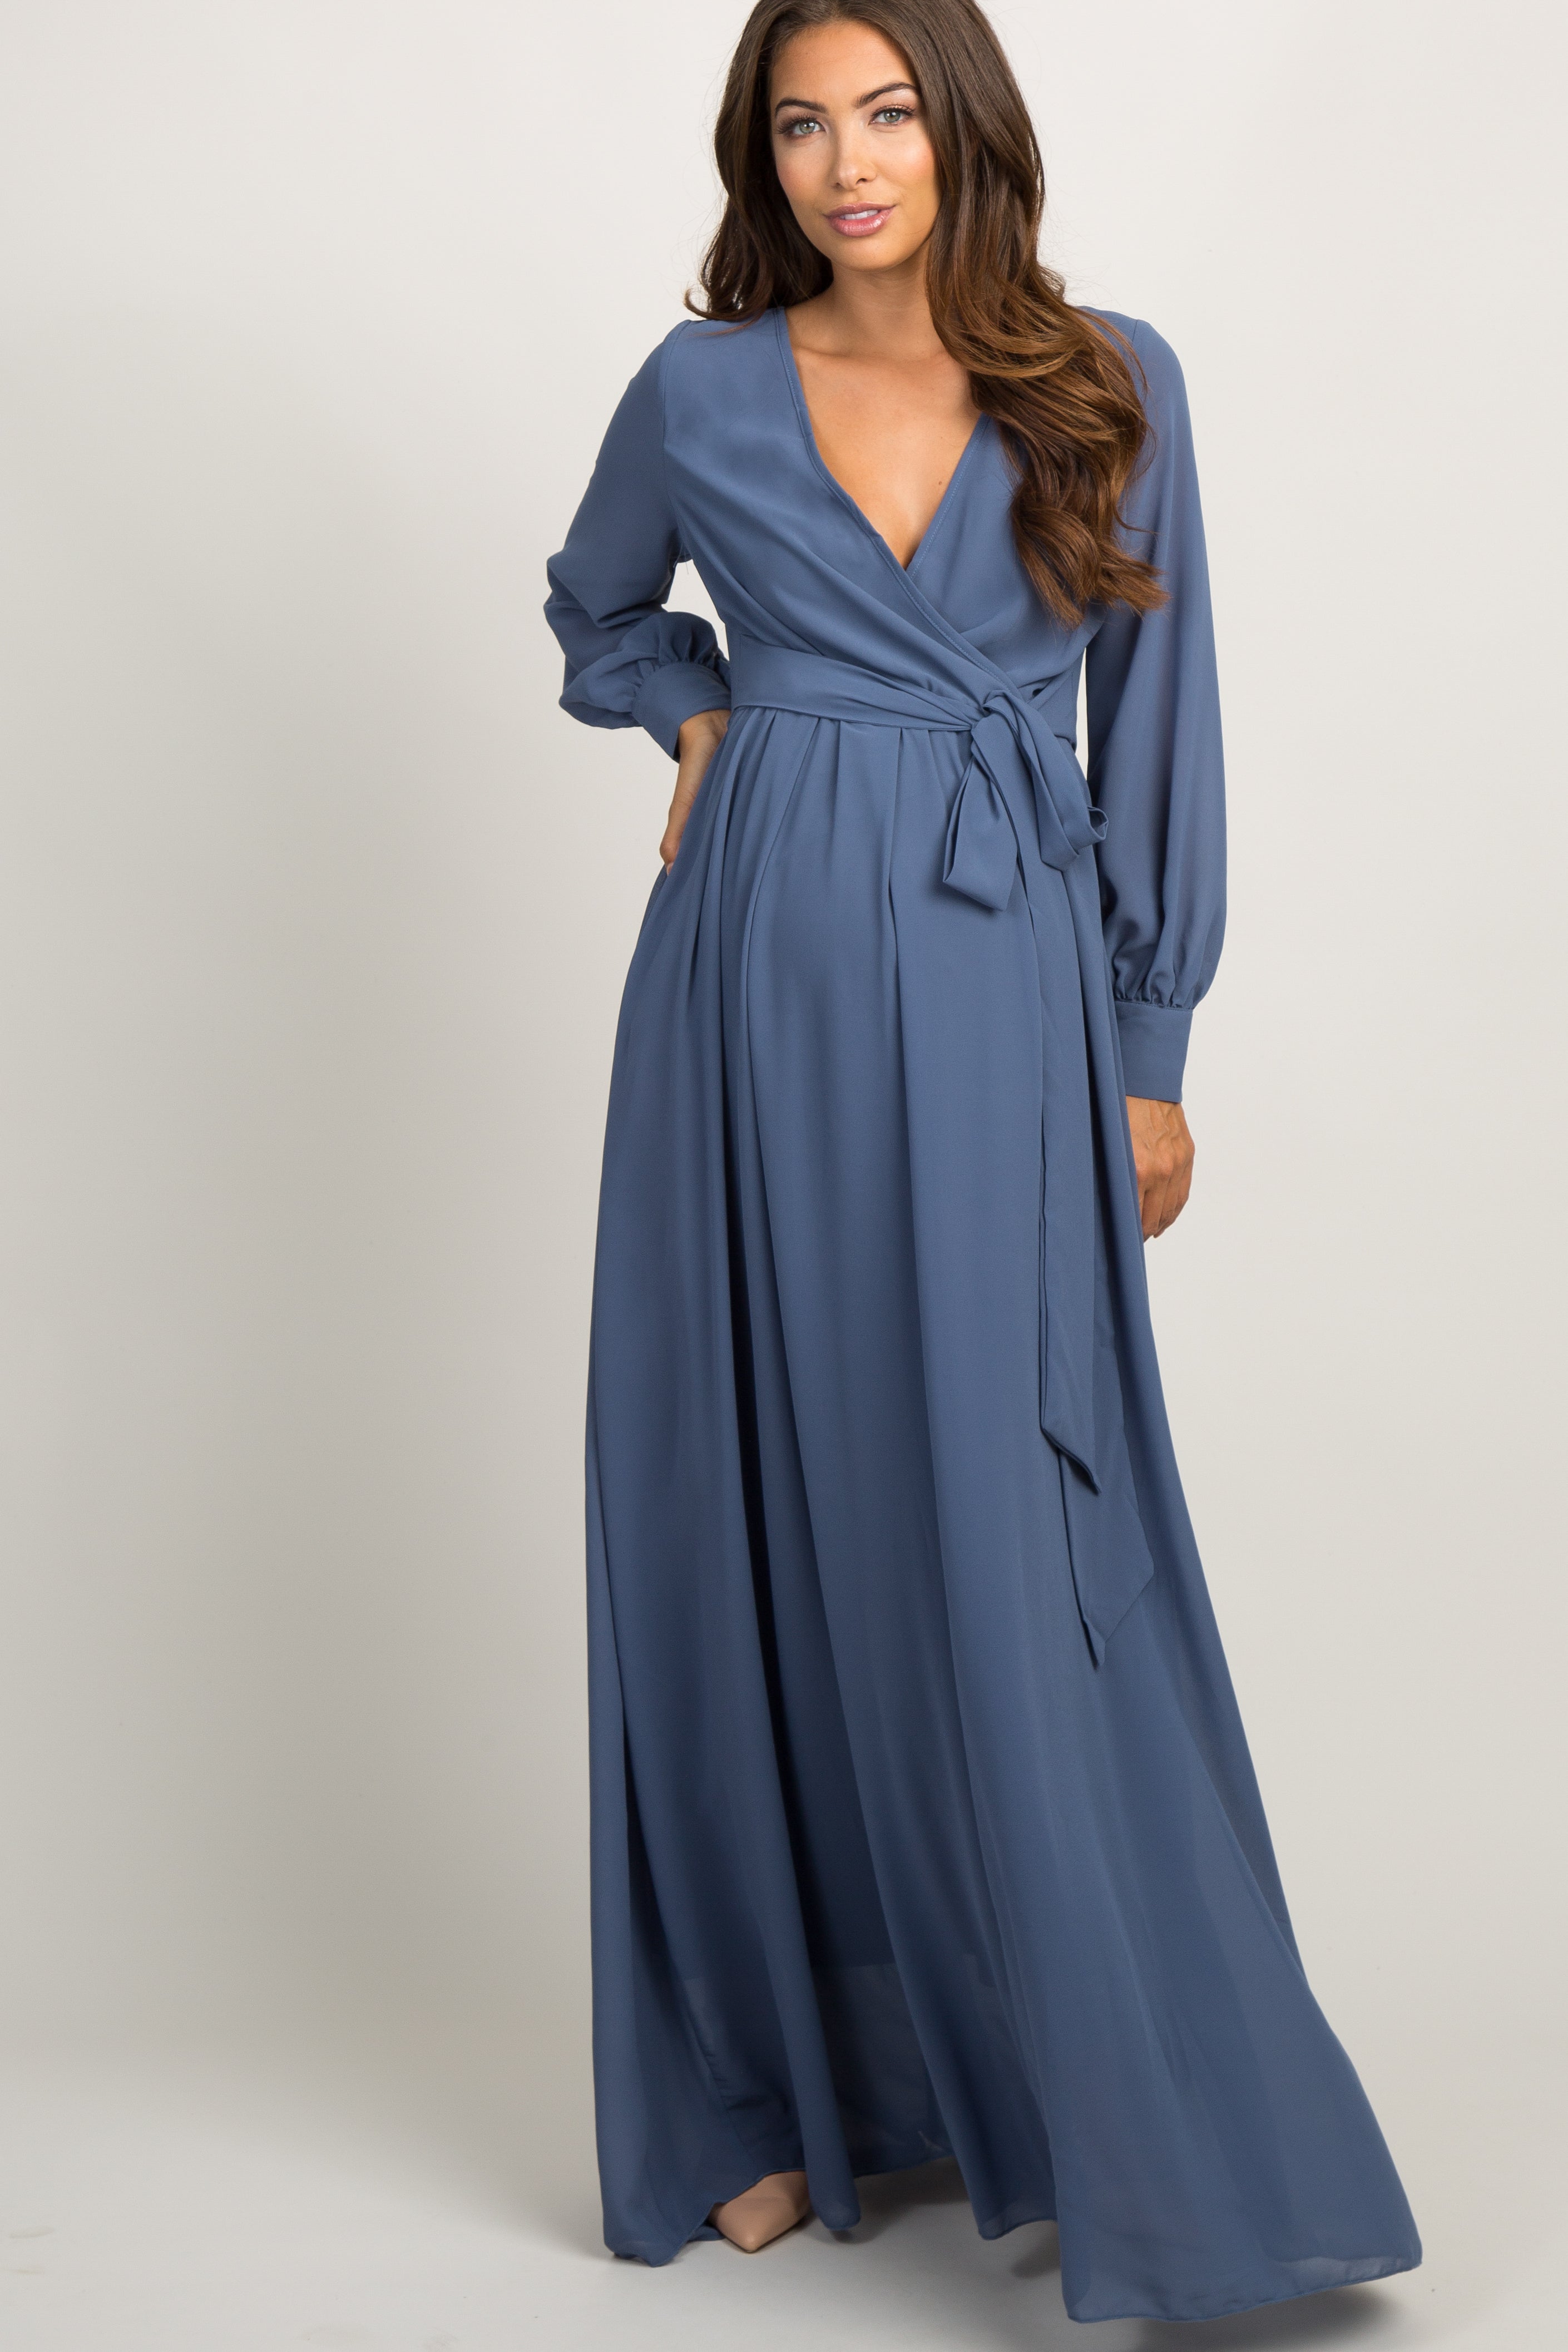 Blue Chiffon Long Sleeve Pleated Maternity Maxi Dress– PinkBlush